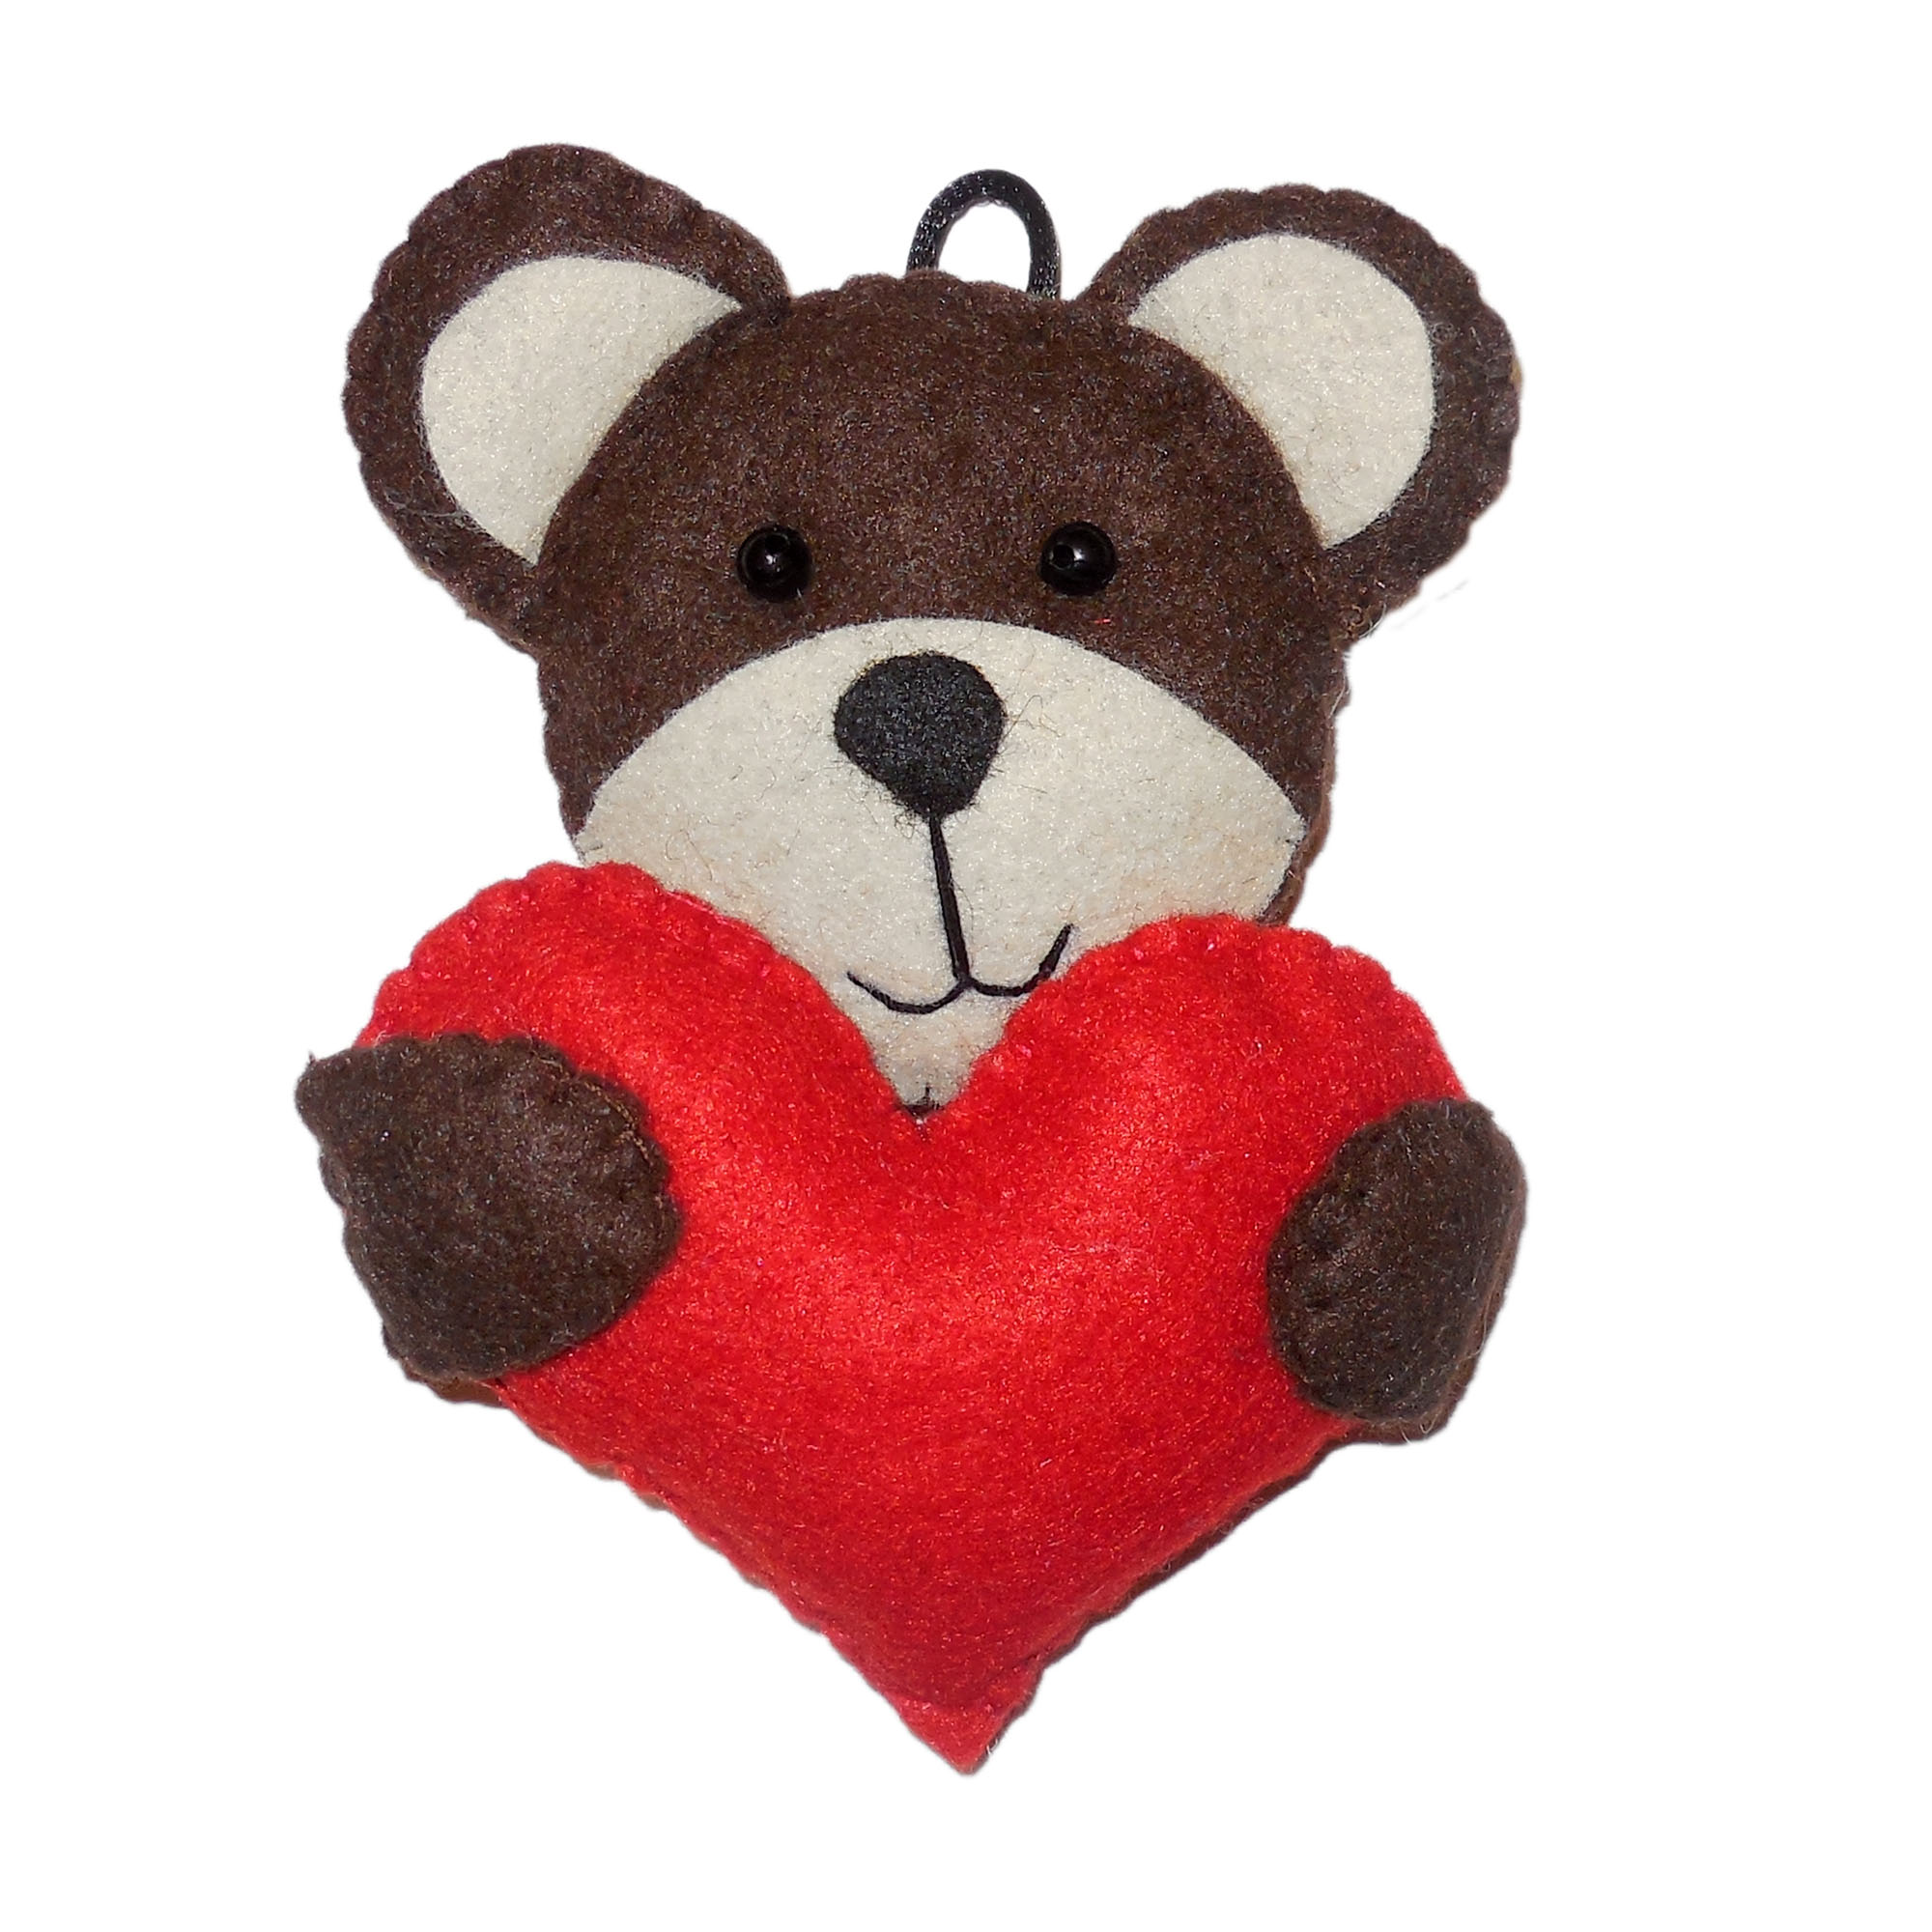 نقد و بررسی عروسک تزیینی نمدی مدل خرس و قلب کد N-065 توسط خریداران